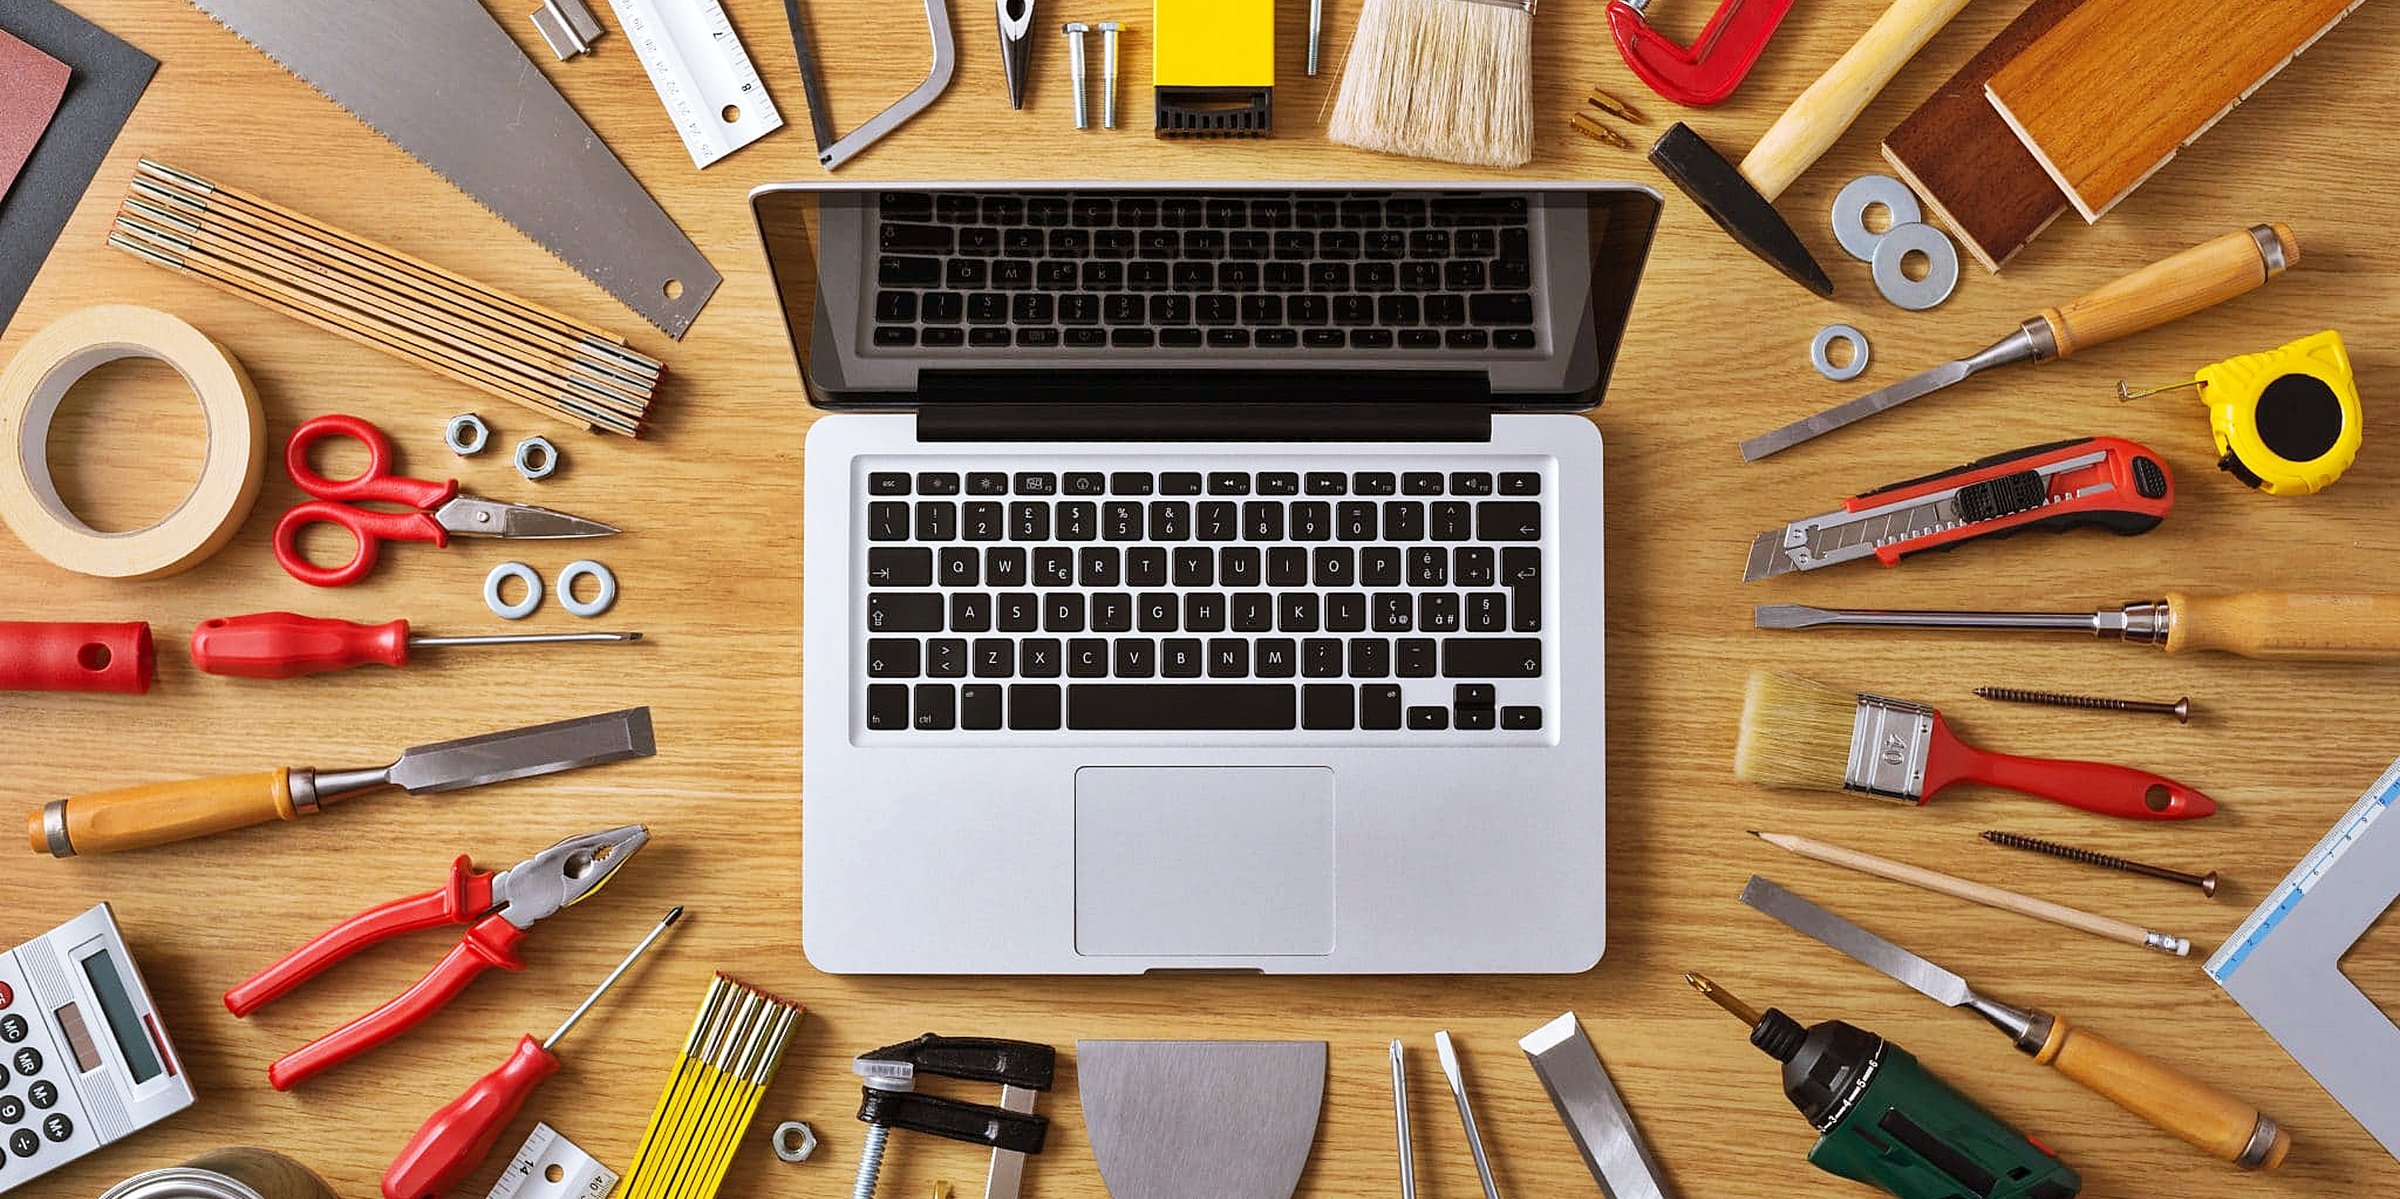 Resource tools. Рабочие инструменты. Бизнес инструменты. Строительные инструменты. Инструменты для ремонта квартиры.